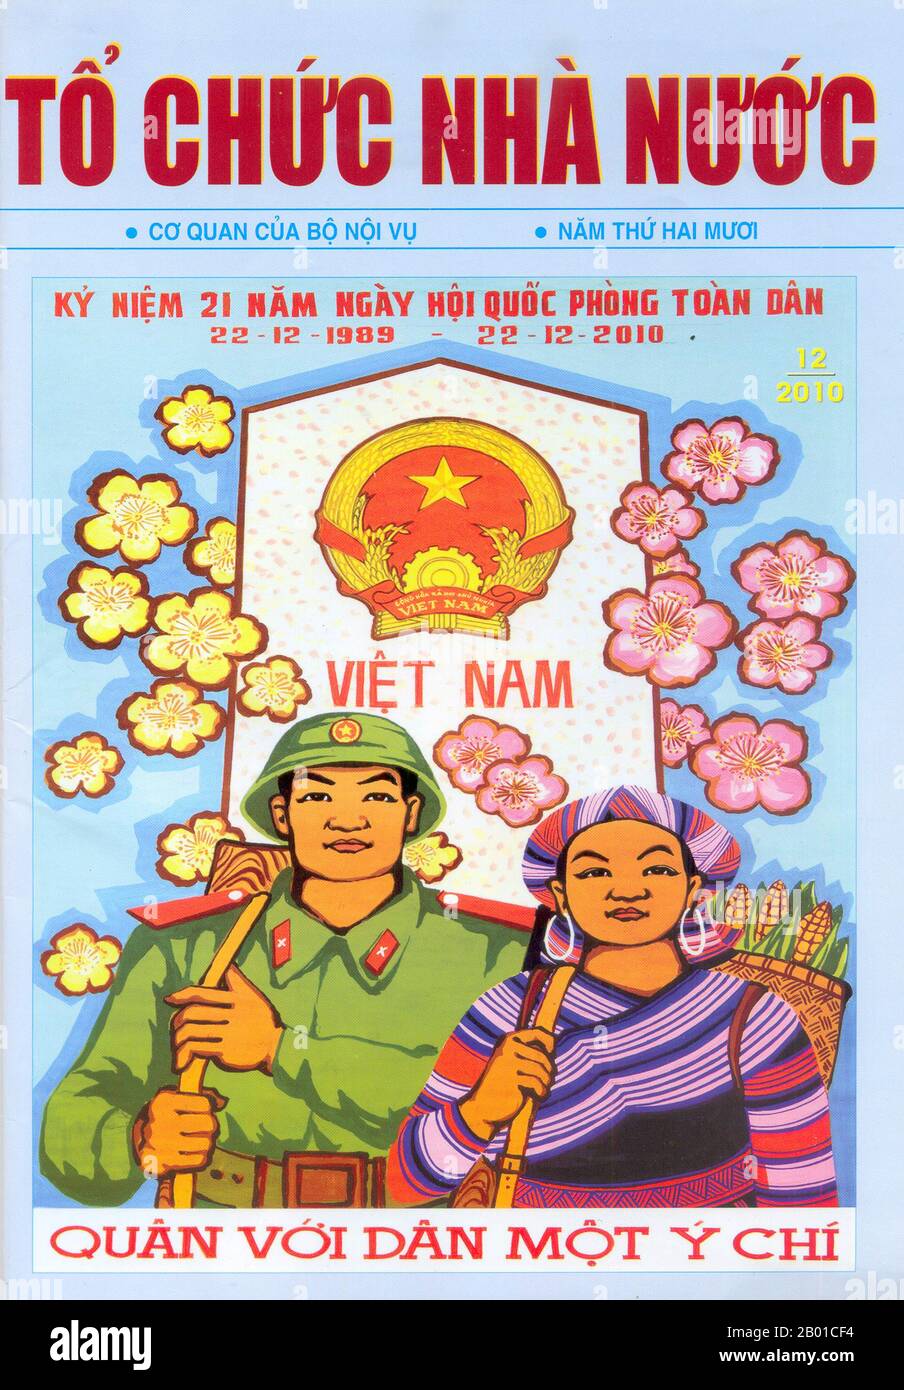 Vietnam: Cartel de propaganda comunista: ¡El ejército y el pueblo son de una sola mente! 2010 El Ejército Popular de Vietnam (en vietnamita: Quân Đội Nhân Dân Việt Nam, traducido como Ejército Popular de Vietnam y Ejército Popular de Vietnam) es las fuerzas armadas de Vietnam. El VPA incluye: Las Fuerzas Terrestres del Pueblo Vietnamita (incluyendo las Fuerzas Estratégicas de Retraso y las Fuerzas de Defensa Fronteriza), la Armada del Pueblo de Vietnam (incluyendo el Cuerpo de Infantería de Marina VPN), la Fuerza Aérea del Pueblo de Vietnam y la Policía de Marina de Vietnam. Foto de stock